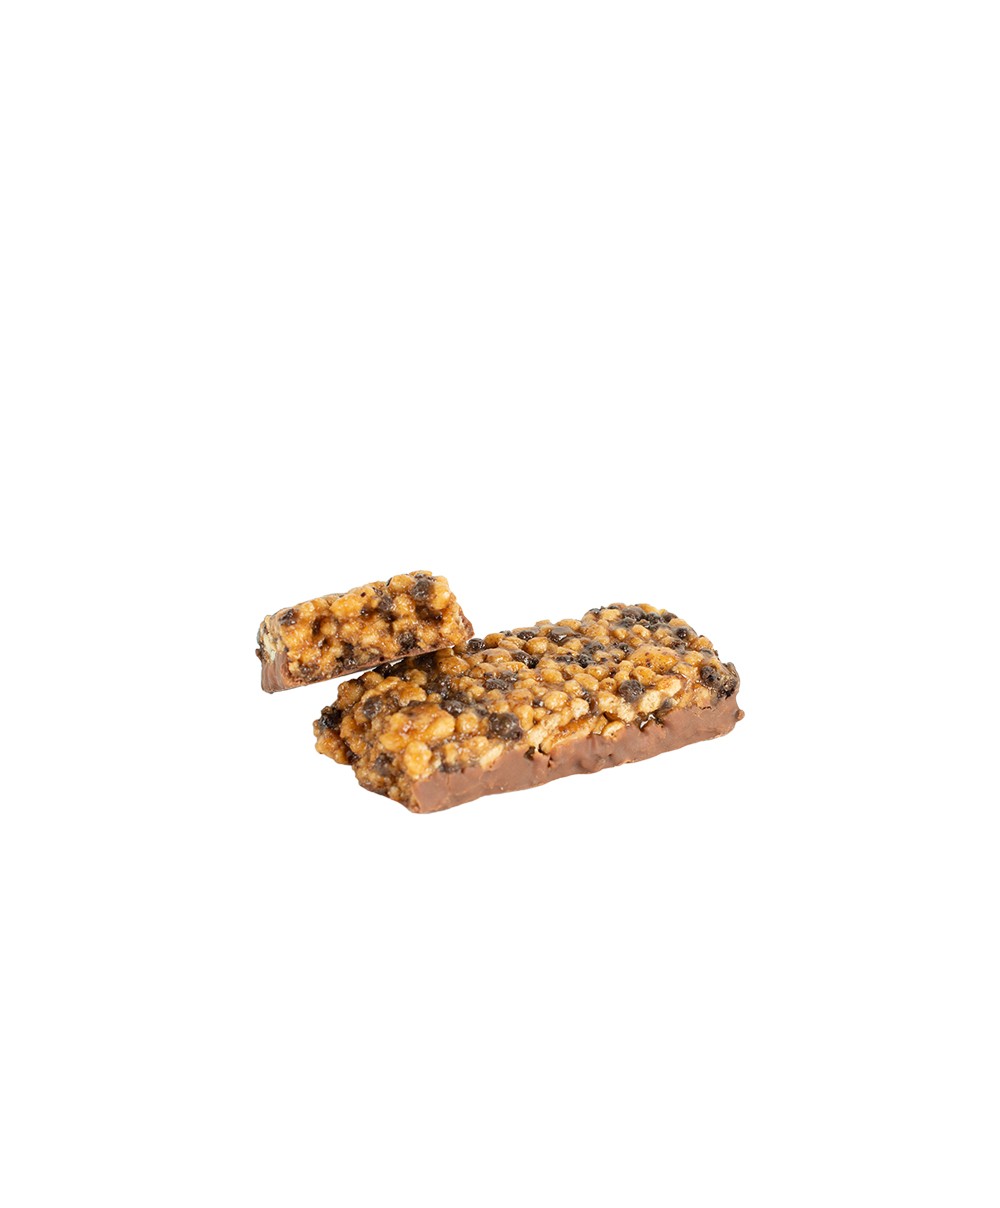 Najlacnejšia proteínová diéta na Slovensku. Čokoládovo-arašidová tyčinka (56 g) Chudnite rýchlo a zdravo.